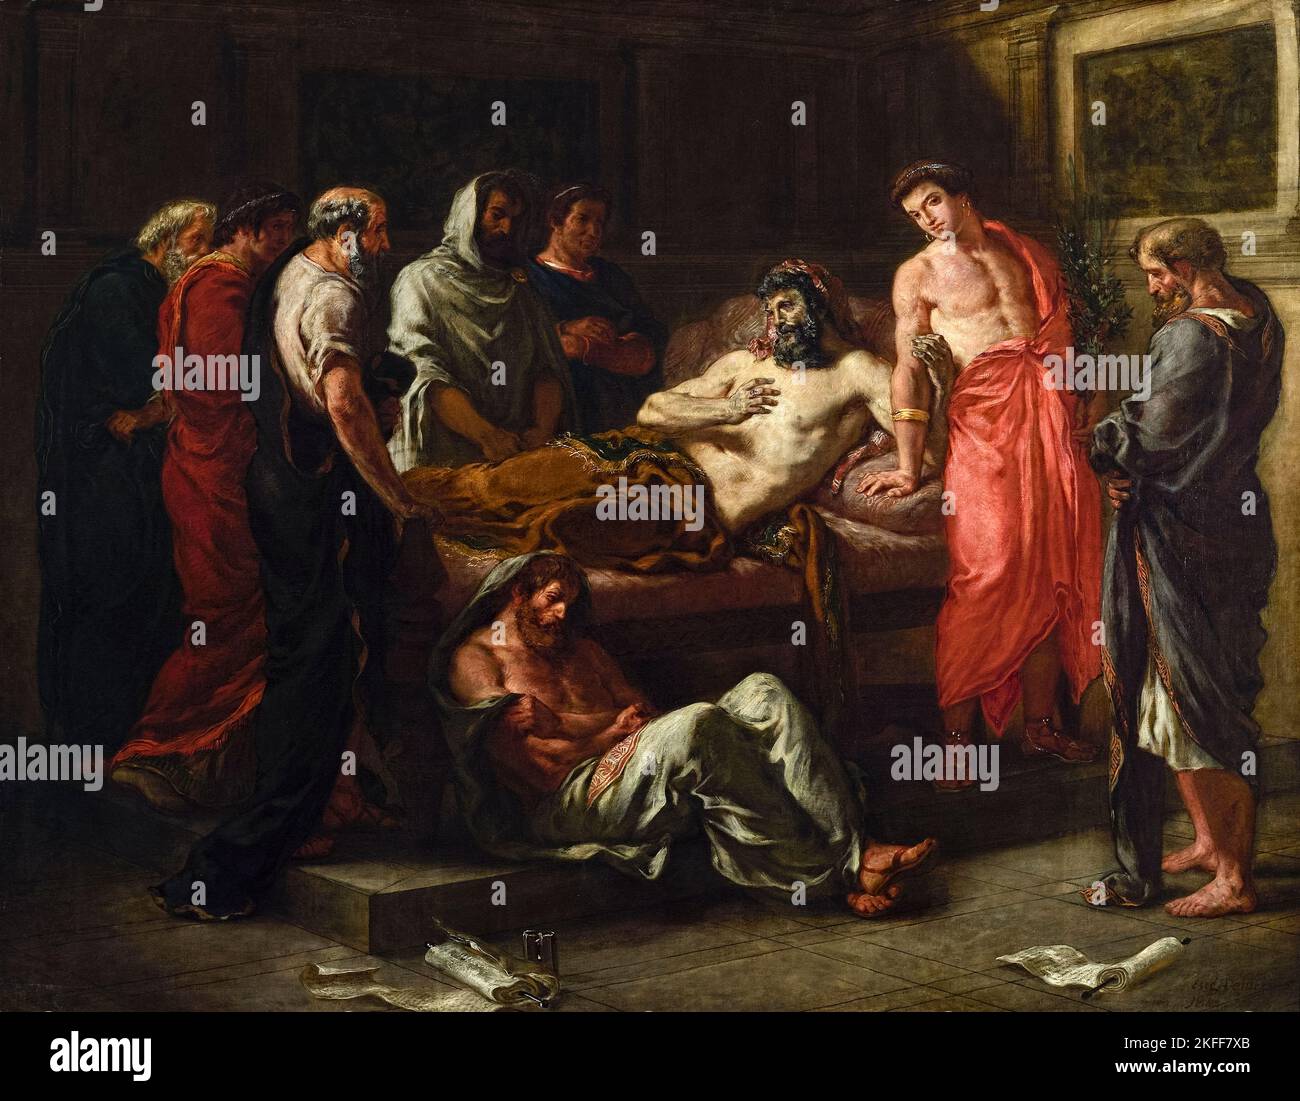 Die letzten Worte des Imperators Marcus Aurelius des französischen romantischen Künstlers Eugène Delacroix (1798-1863), gemalt 1844, zeigen den römischen Kaiser Marcus Aurelius auf seinem Totenbett im Jahr 180AD, der seinen Sohn Commodus umklammert. Stockfoto